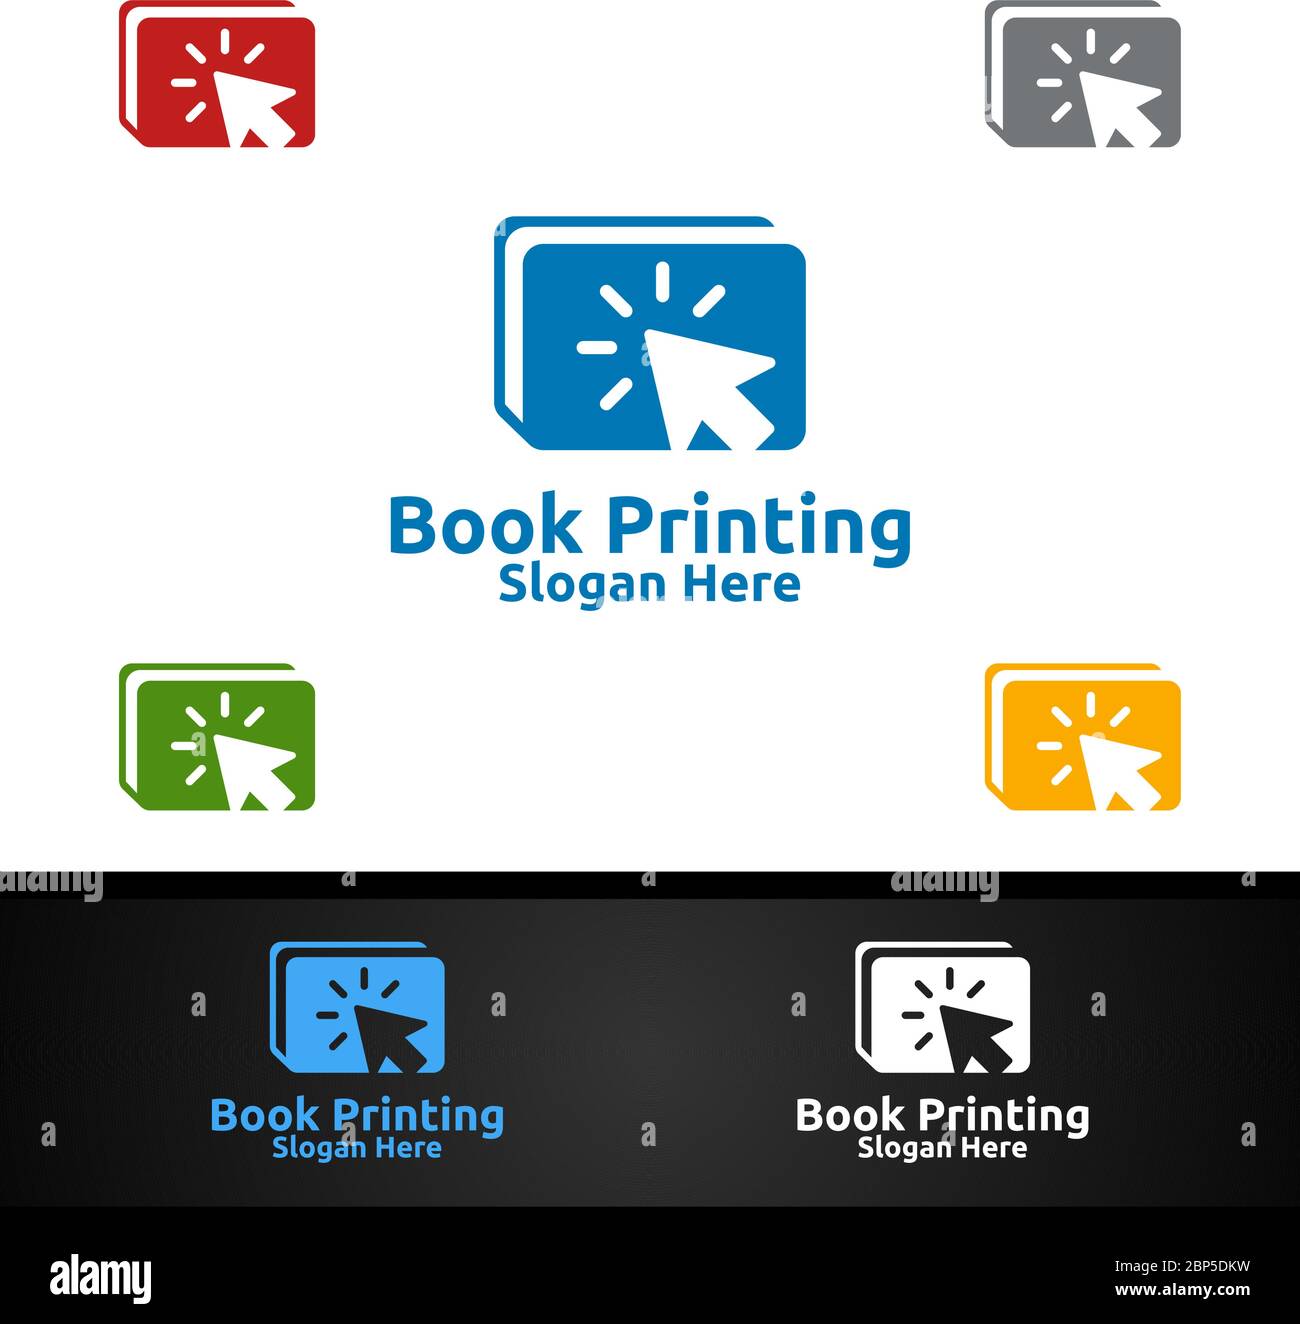 Klicken Sie auf Buchdruck Firma Vector Logo Design für Buch verkaufen, Buchladen, Medien, Einzelhandel, Werbung, Zeitung oder Papieragentur Stock Vektor